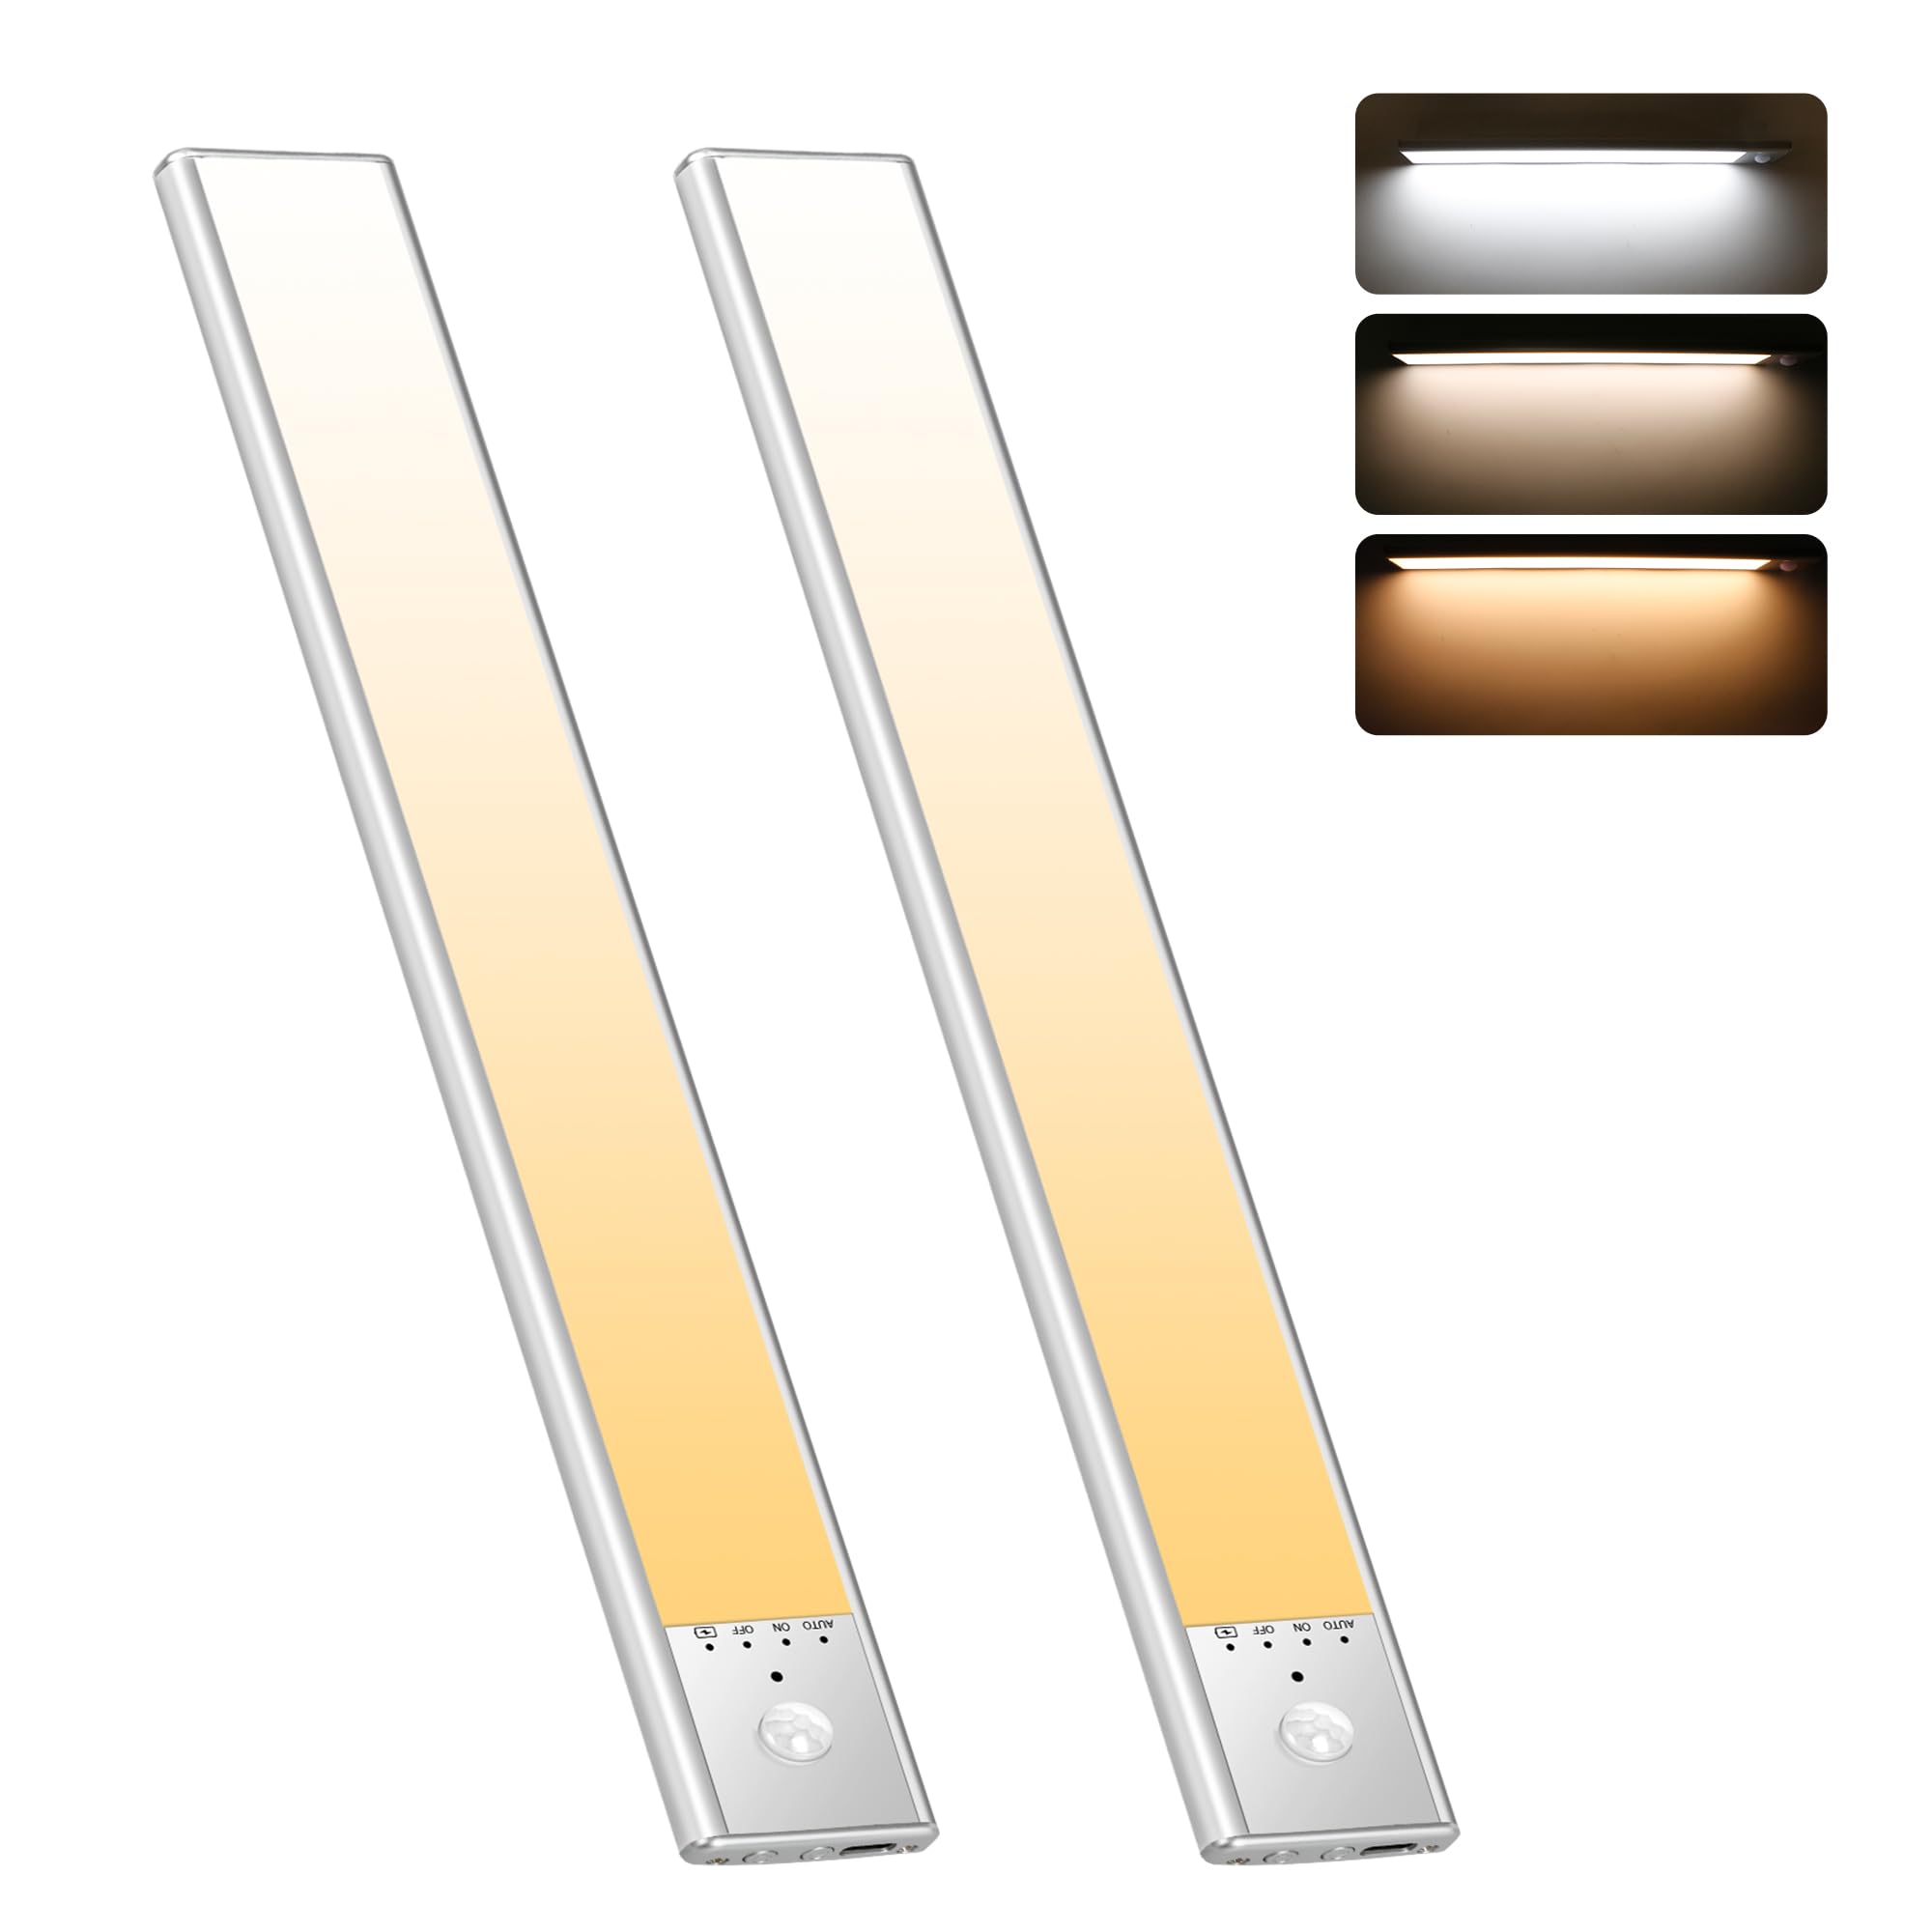 人感センサーライト 室内 USB充電式 3色調整可能 超薄型 led バーライト 20cm 2 本入り マグネット付